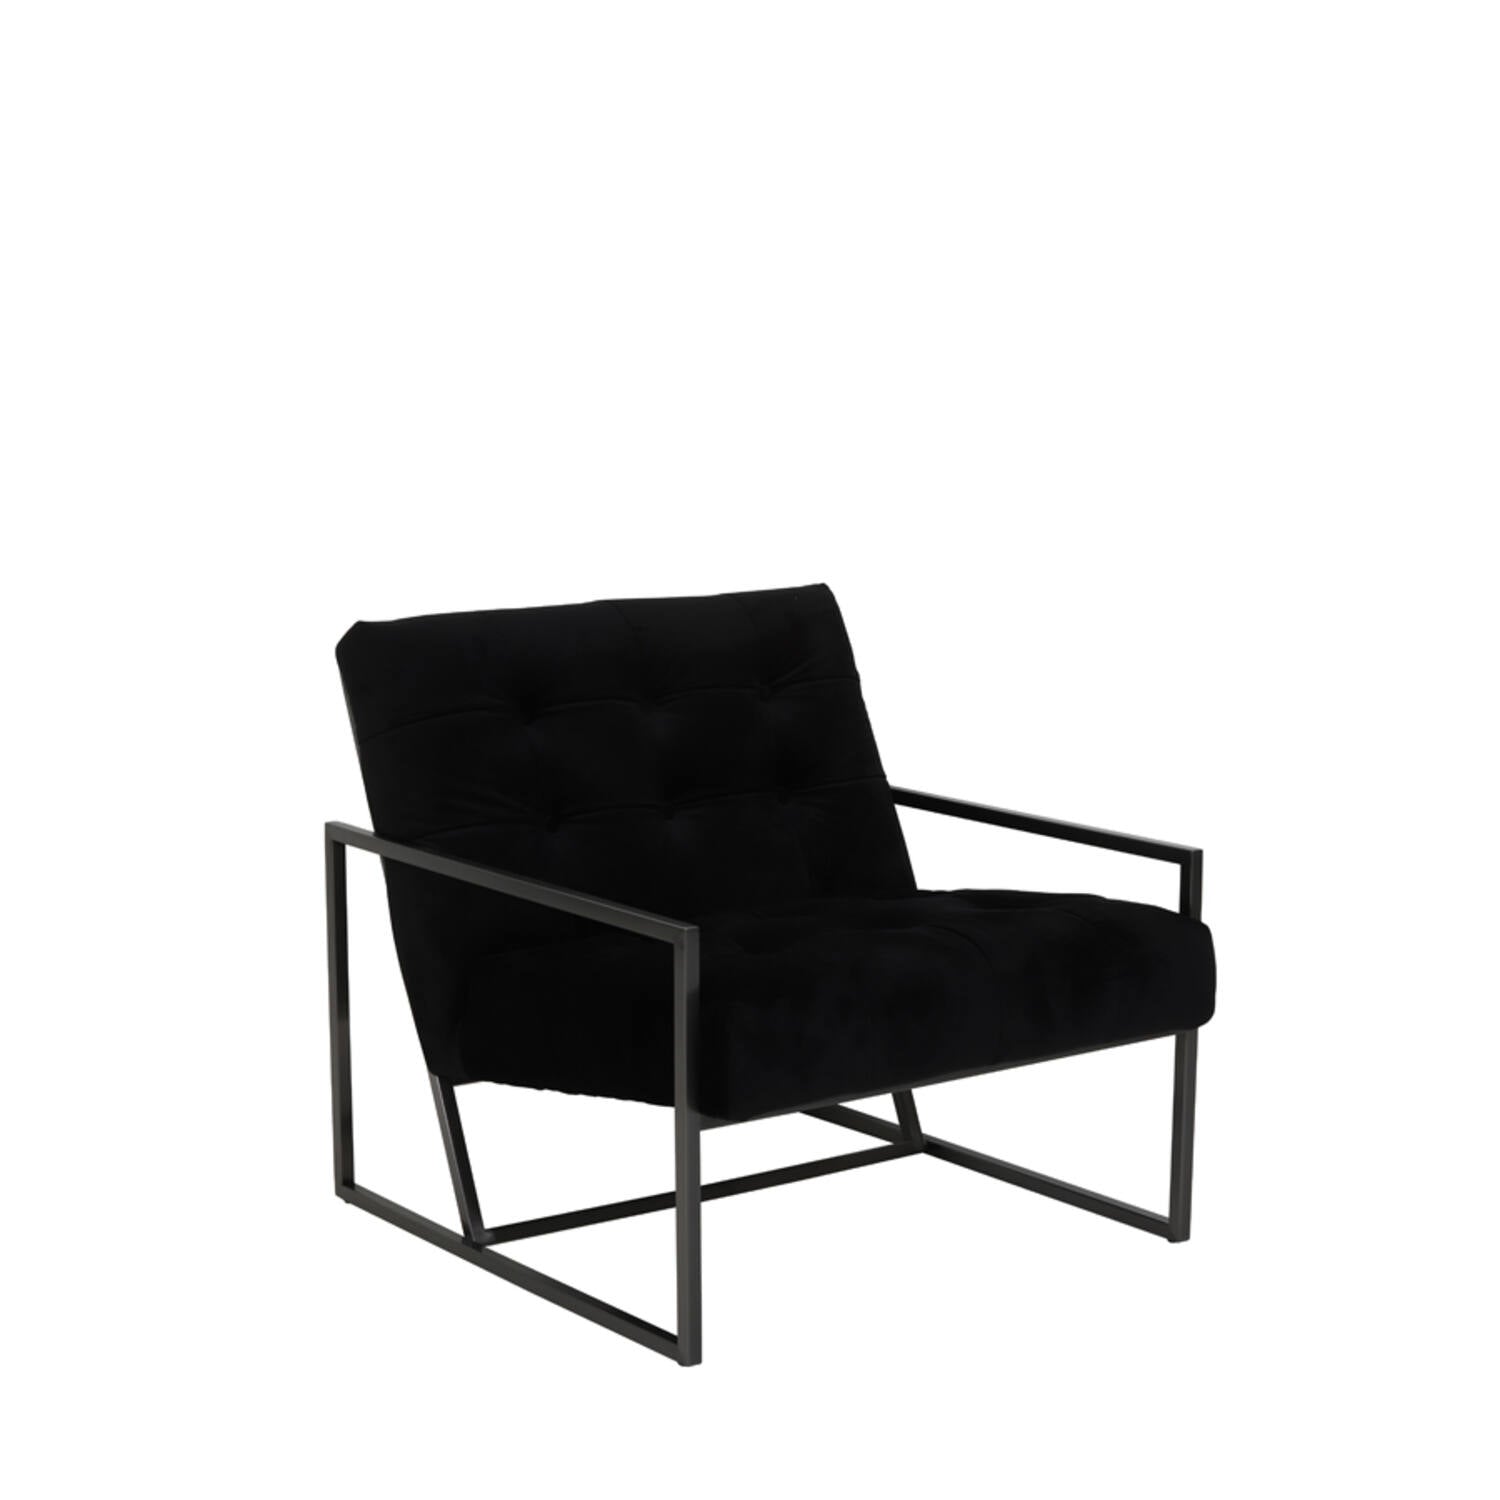 Geneve Velvet Chair - Black Finish